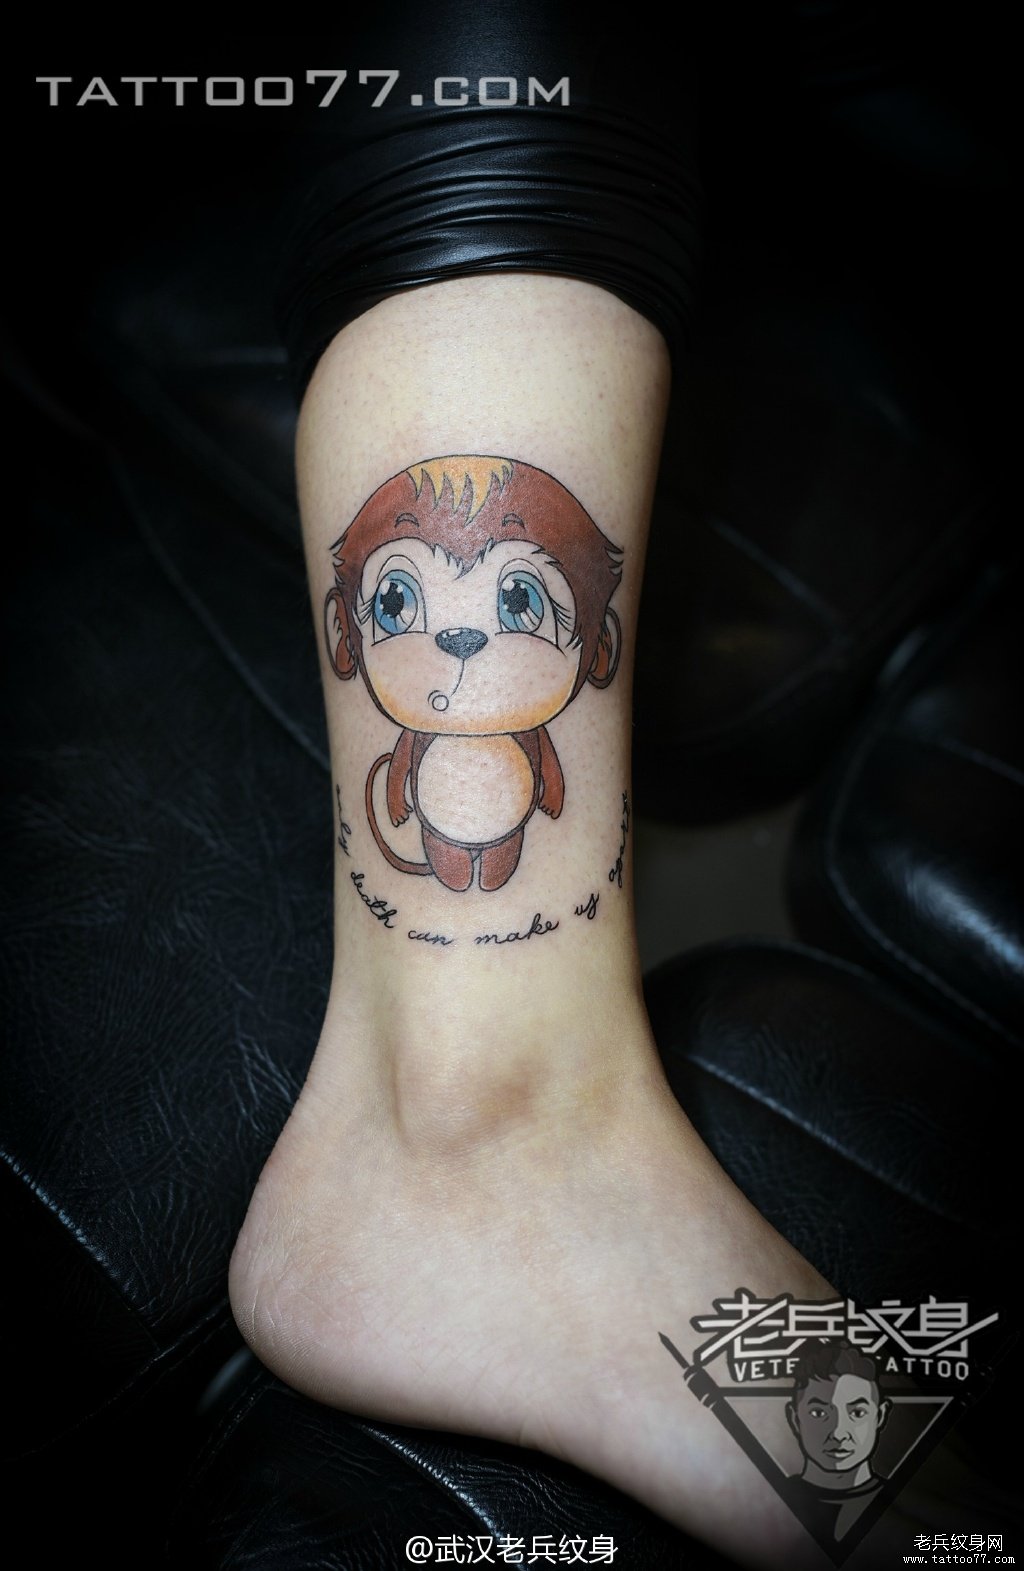 脚踝可爱猴子纹身图案作品